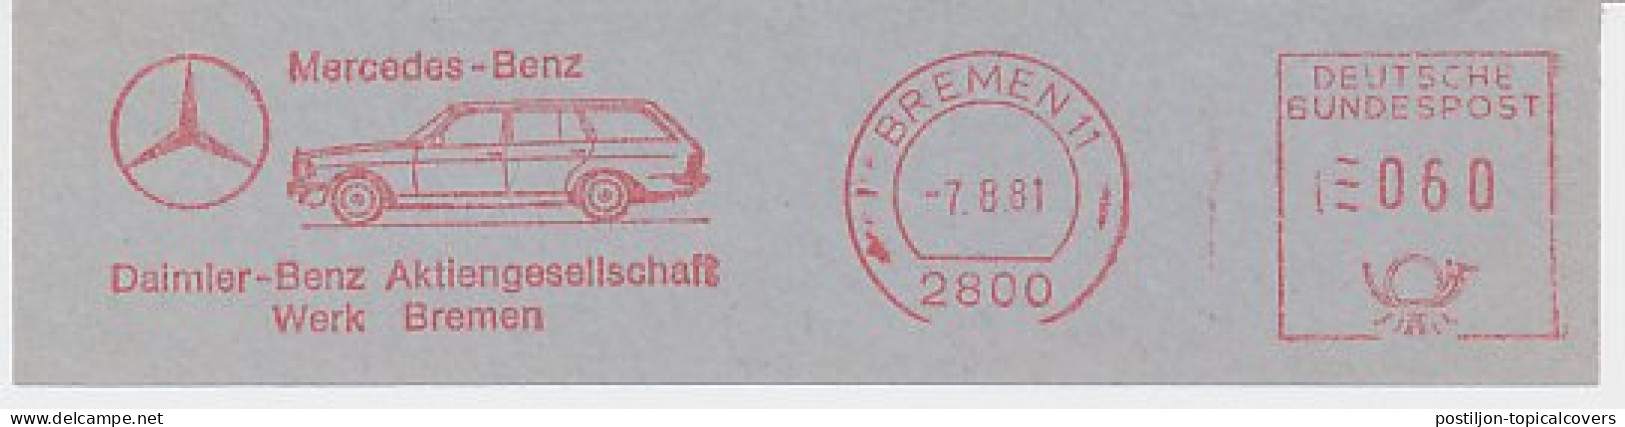 Meter Cut Germany 1981 Car - Mercedes Benz - Autos